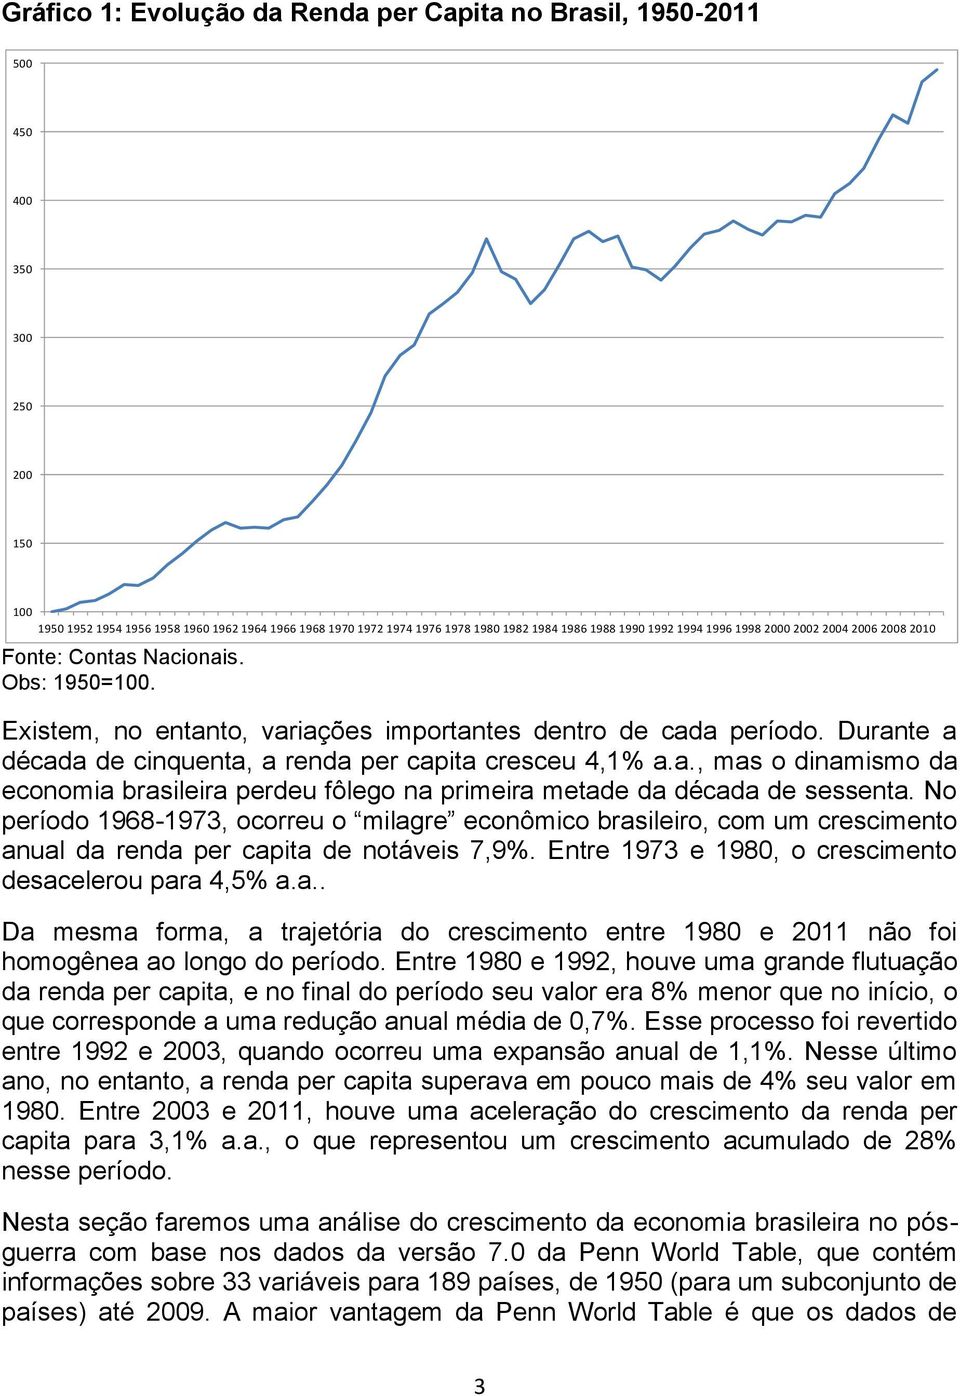 Durante a década de cinquenta, a renda per capita cresceu 4,1% a.a., mas o dinamismo da economia brasileira perdeu fôlego na primeira metade da década de sessenta.